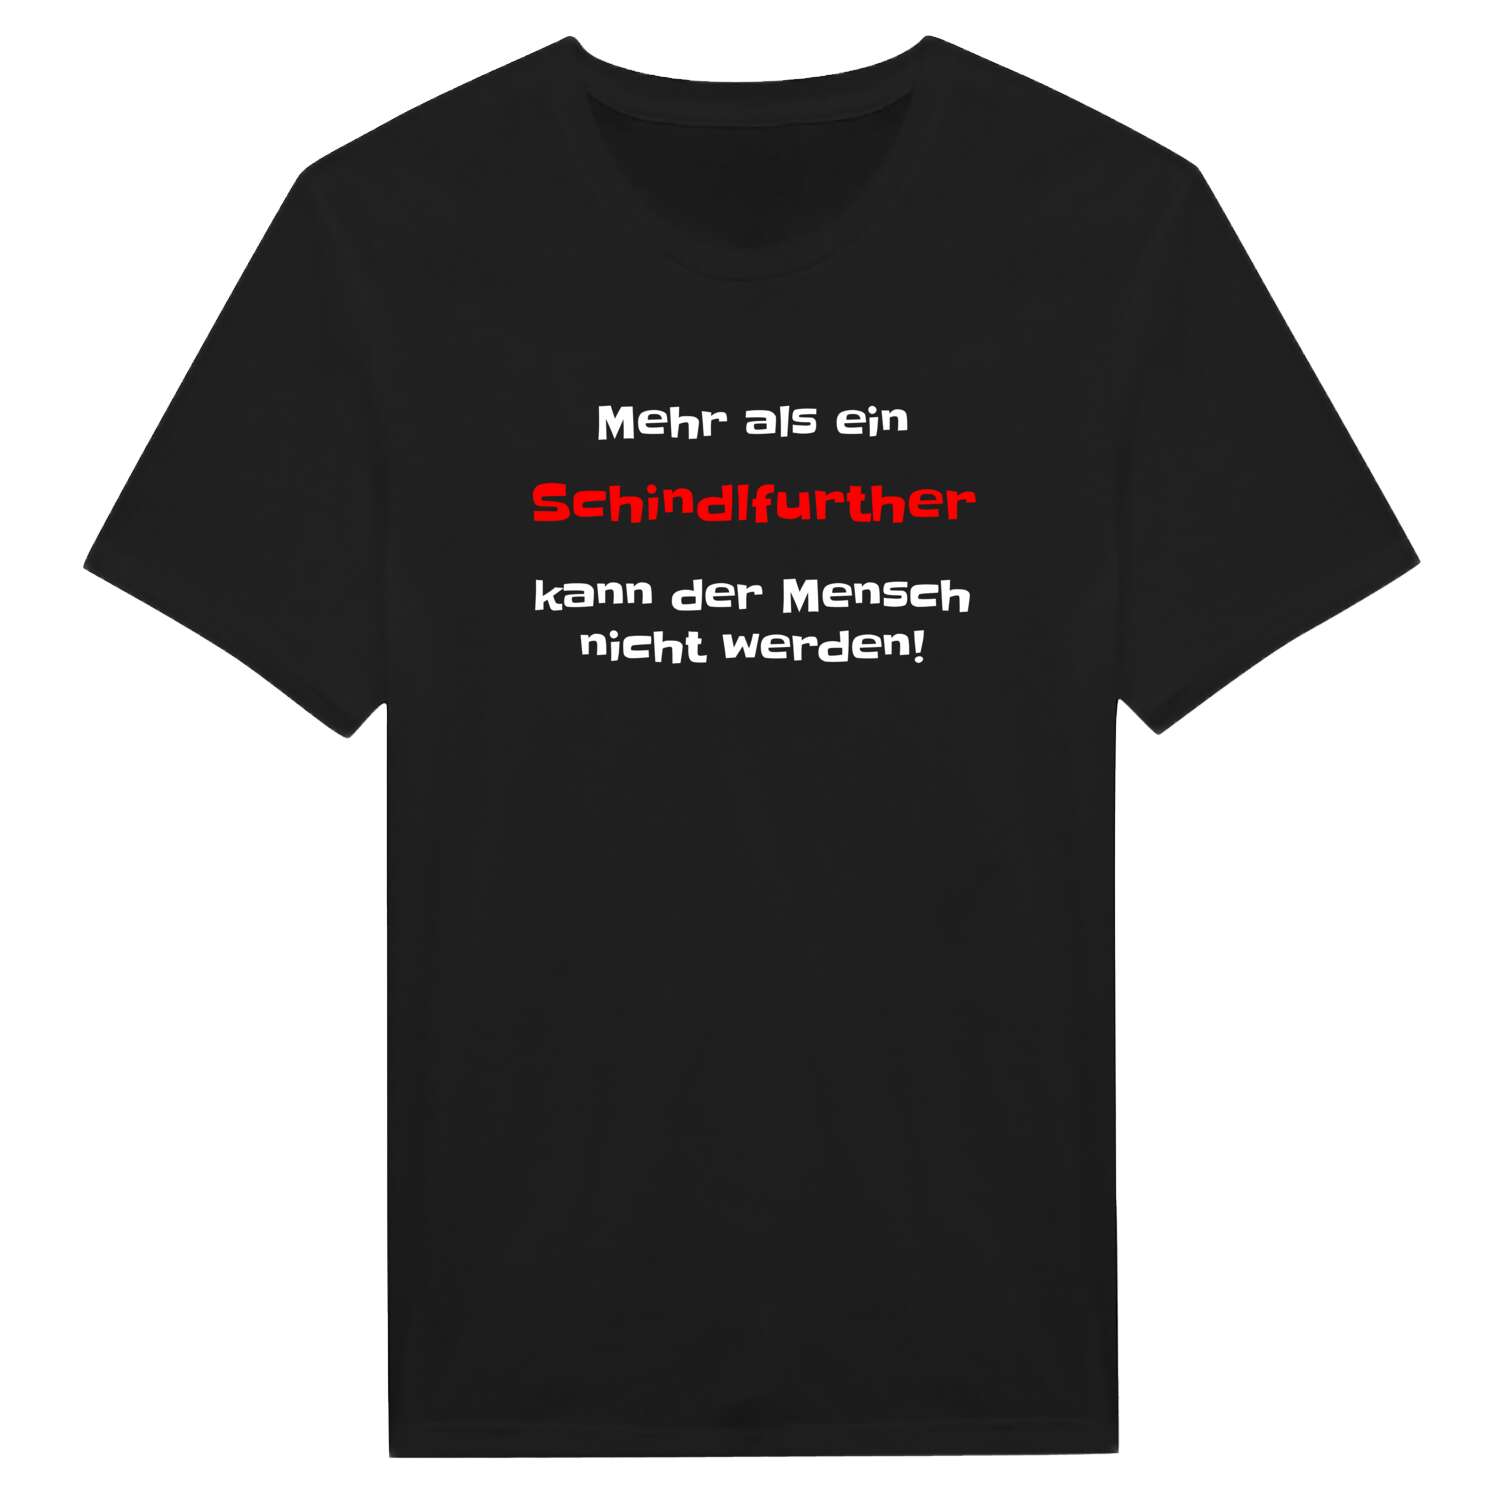 Schindlfurth T-Shirt »Mehr als ein«